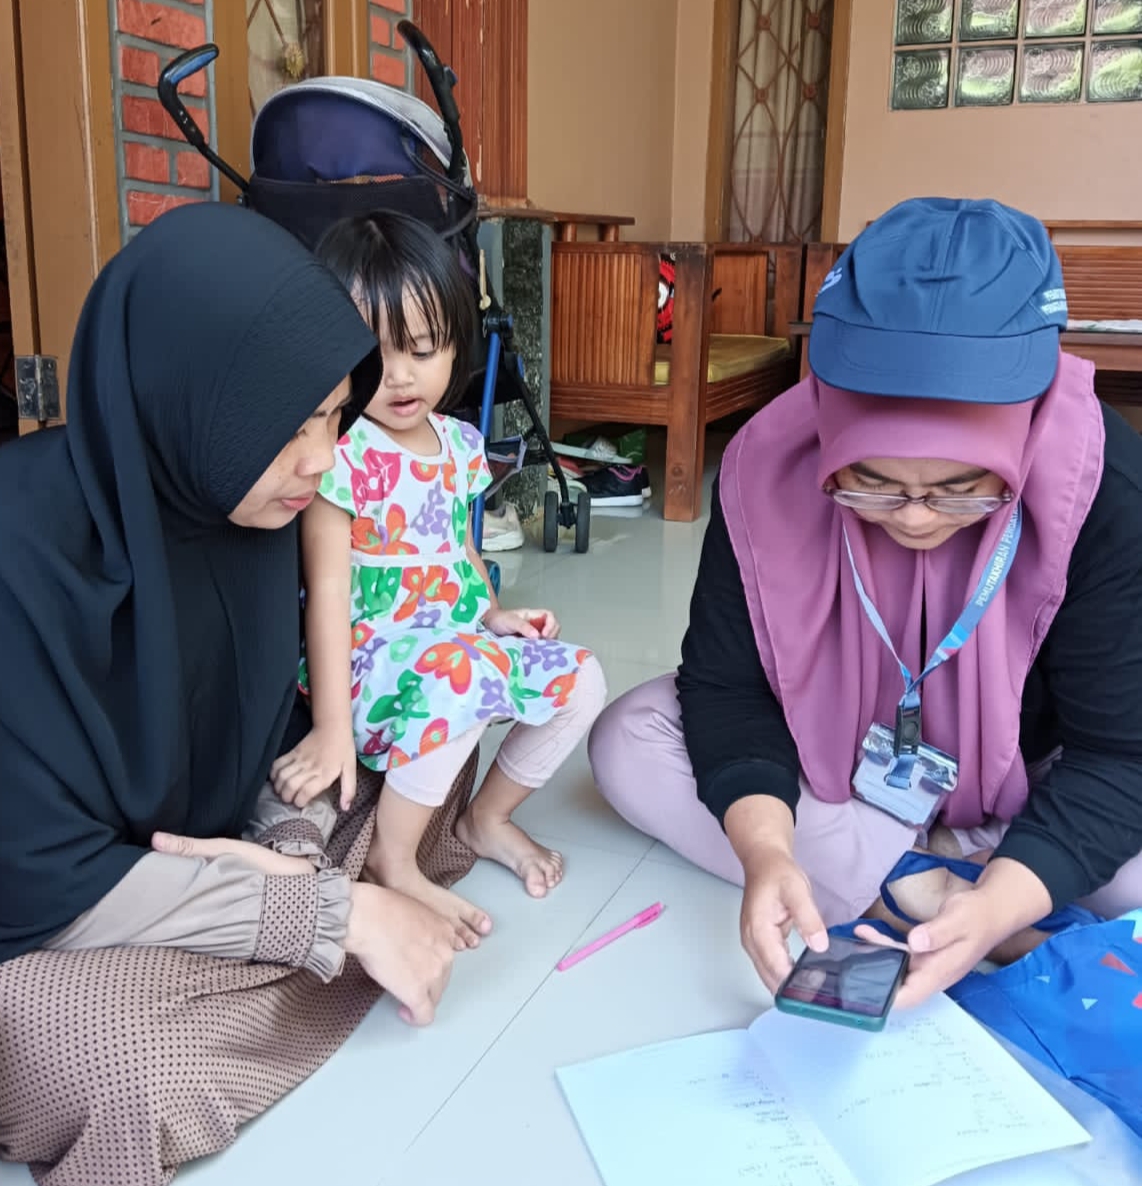 Hari ke-12 Pemutakhiran, Kader Pendata BKKBN Temui 5,58 Juta Keluarga di Indonesia